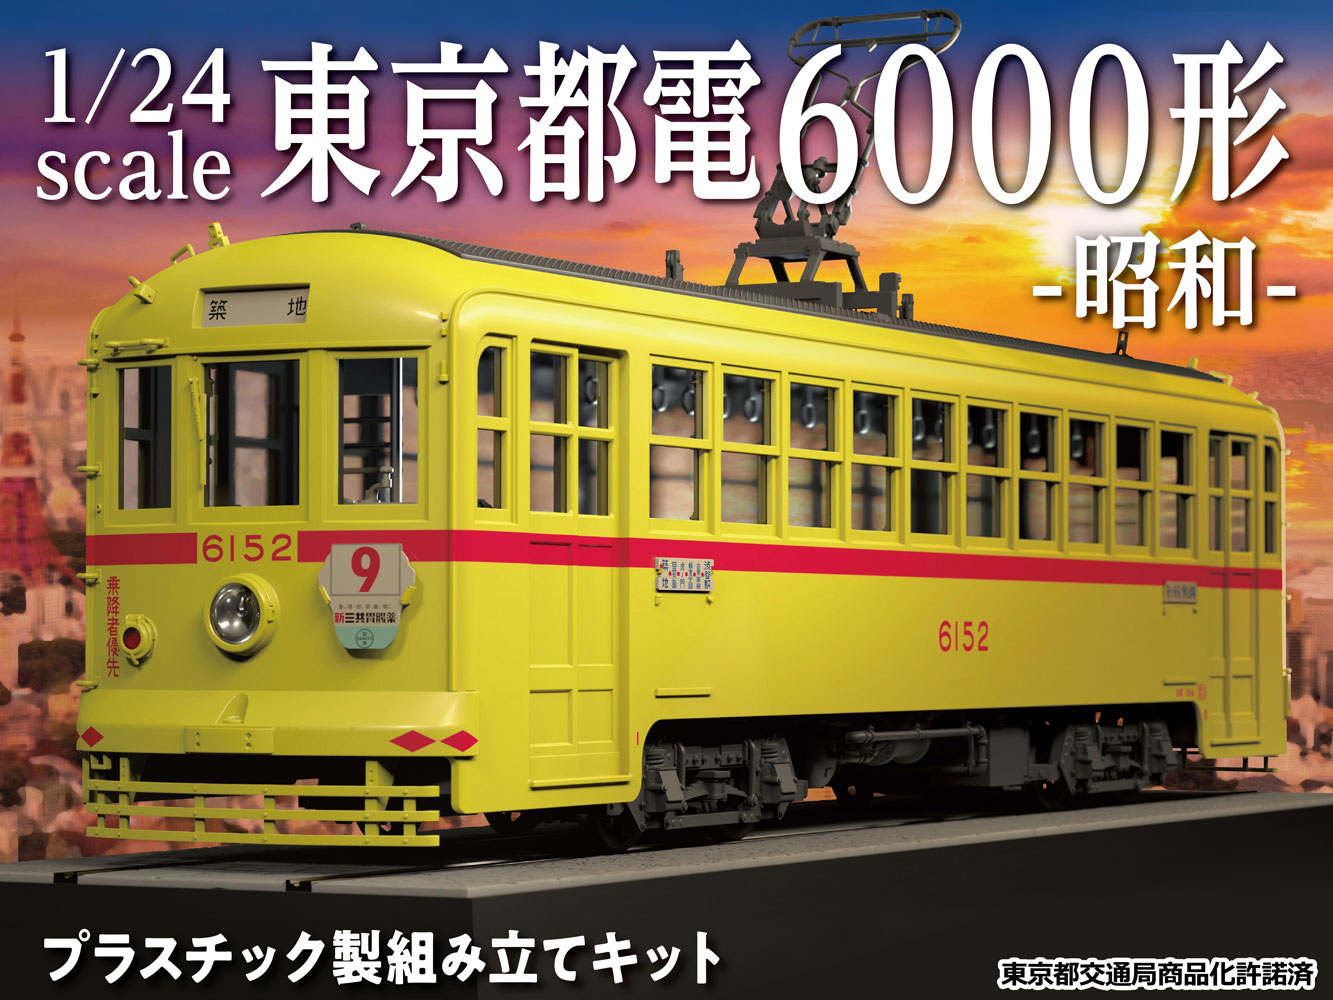 昭和40年代の東京を彩った路面電車が前代未聞のビックスケールでプラスチックモデル化 株式会社グッドスマイルカンパニーのプレスリリース